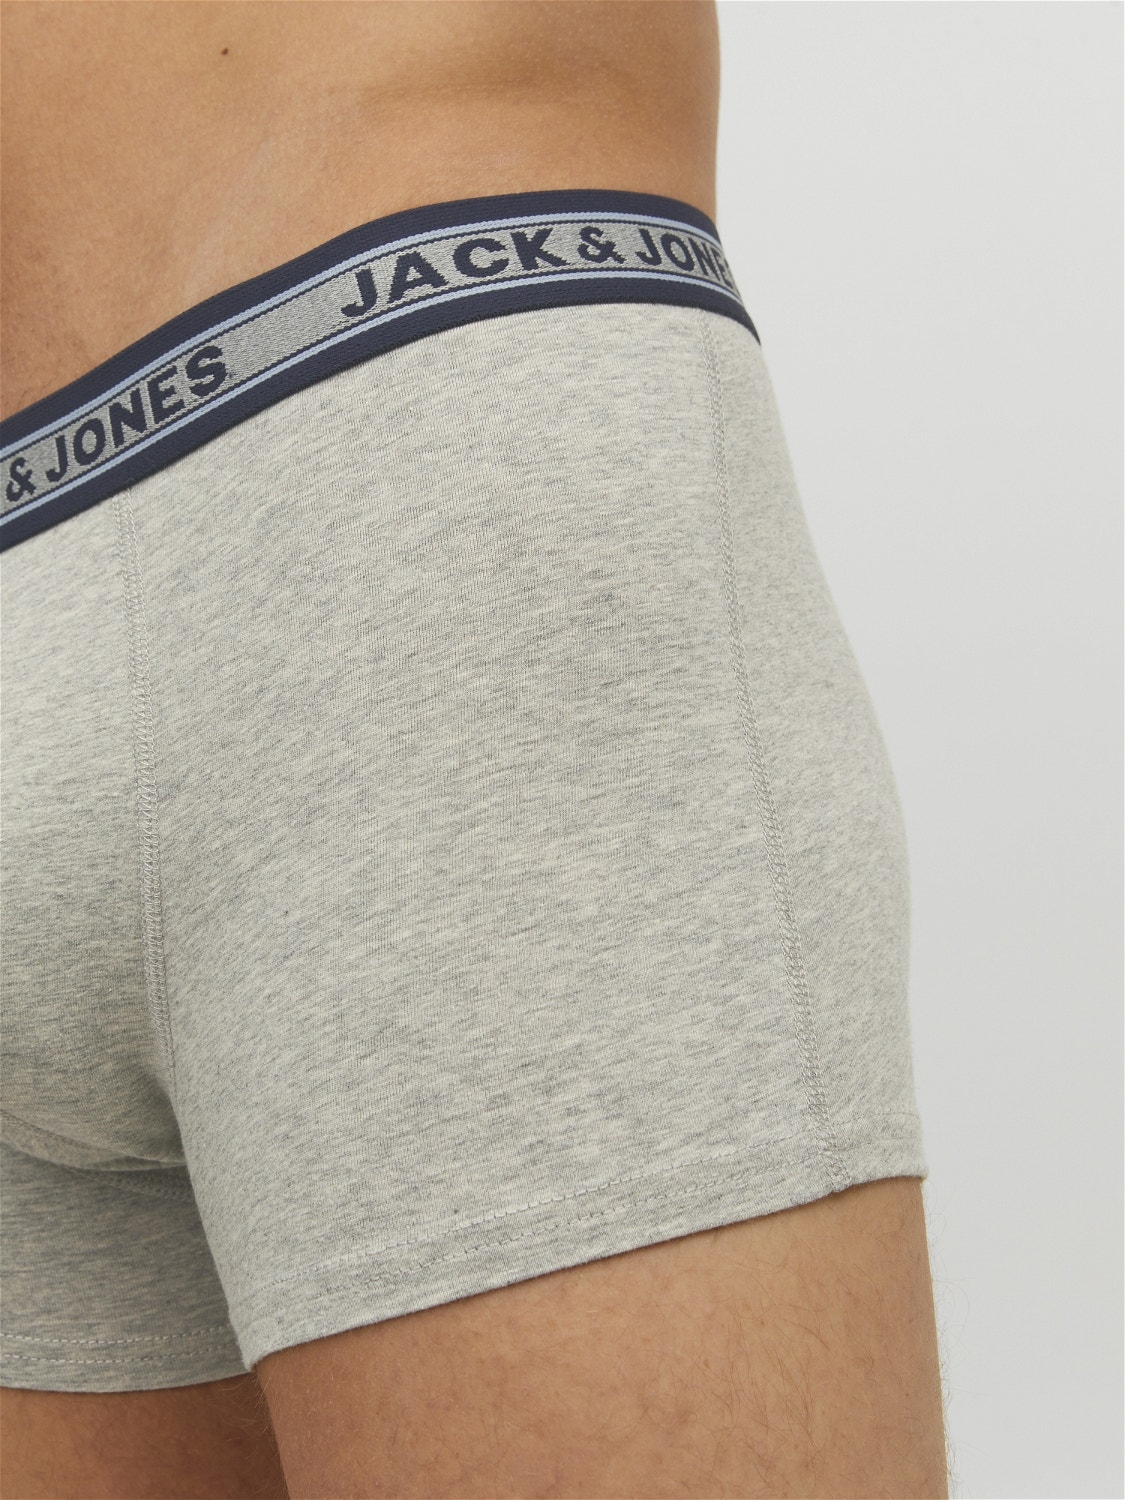 Jack & Jones 5 Trunks -Dark Grey Melange - 12165348